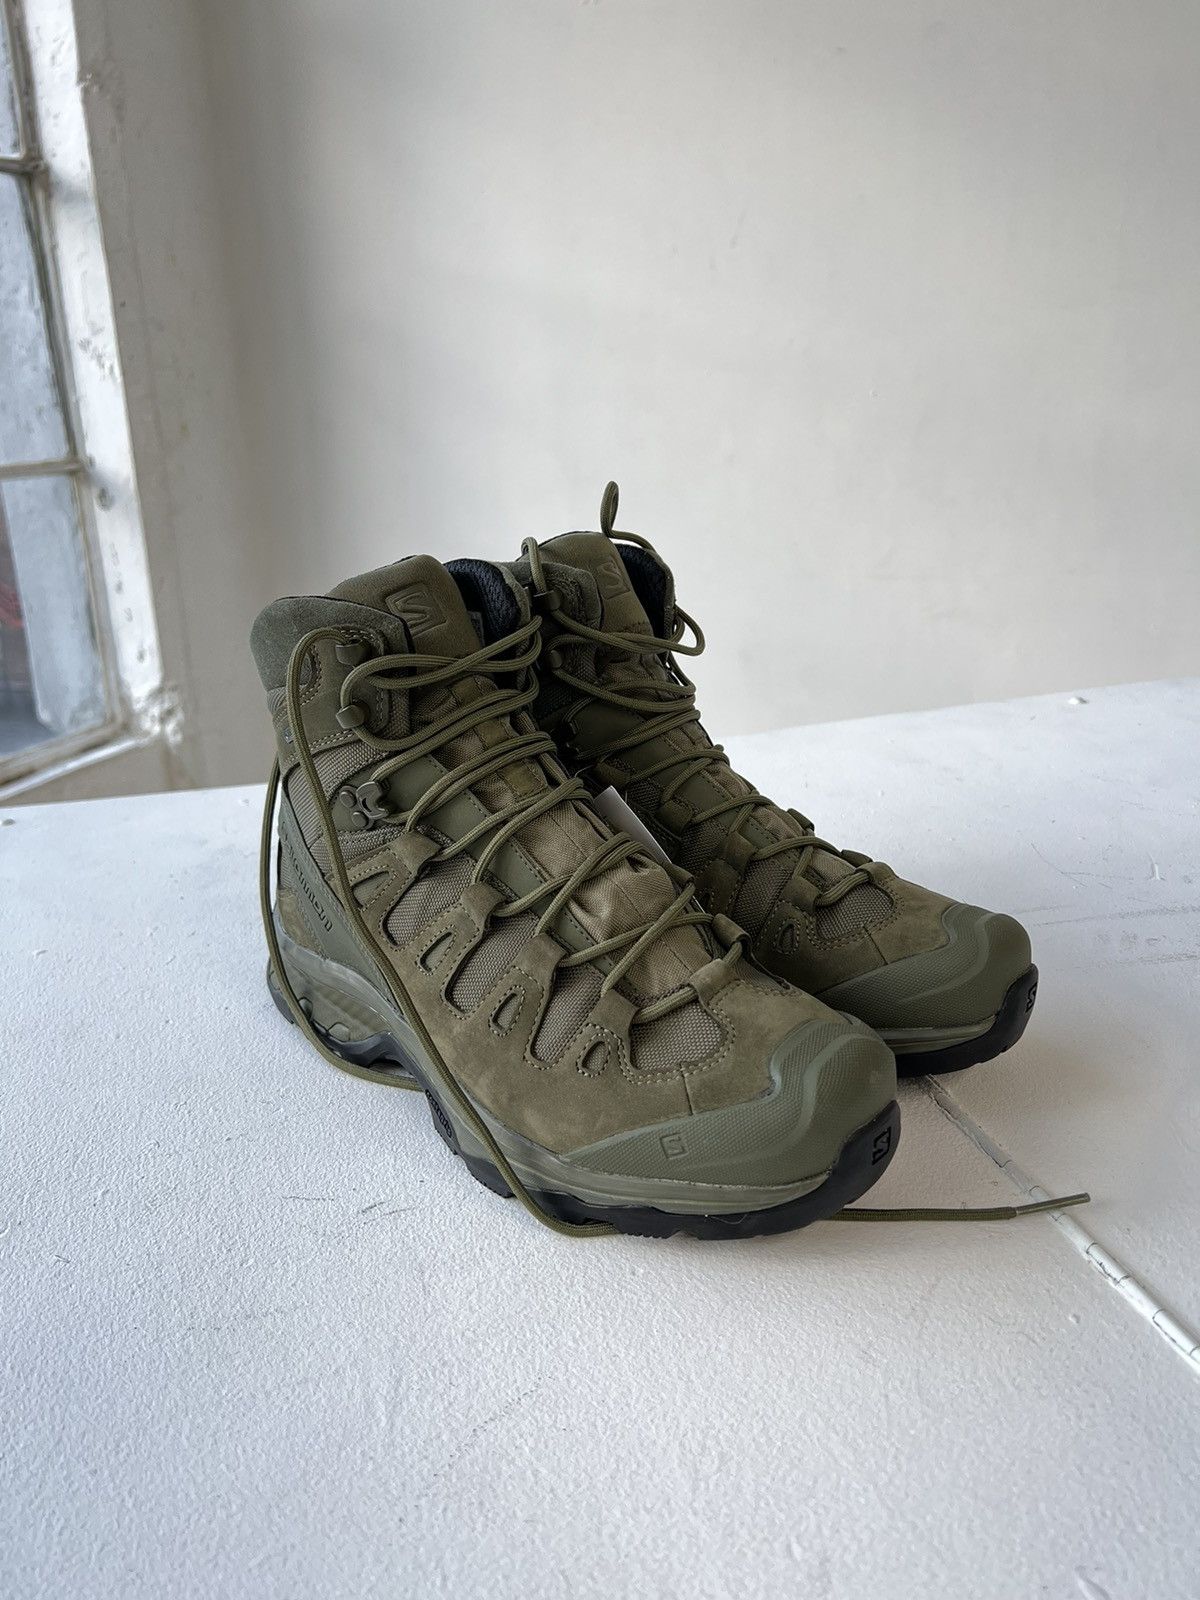 Salomon Salomon Quest 4D GTX Boots Size US 9.5 / EU 42-43 - 2 Preview